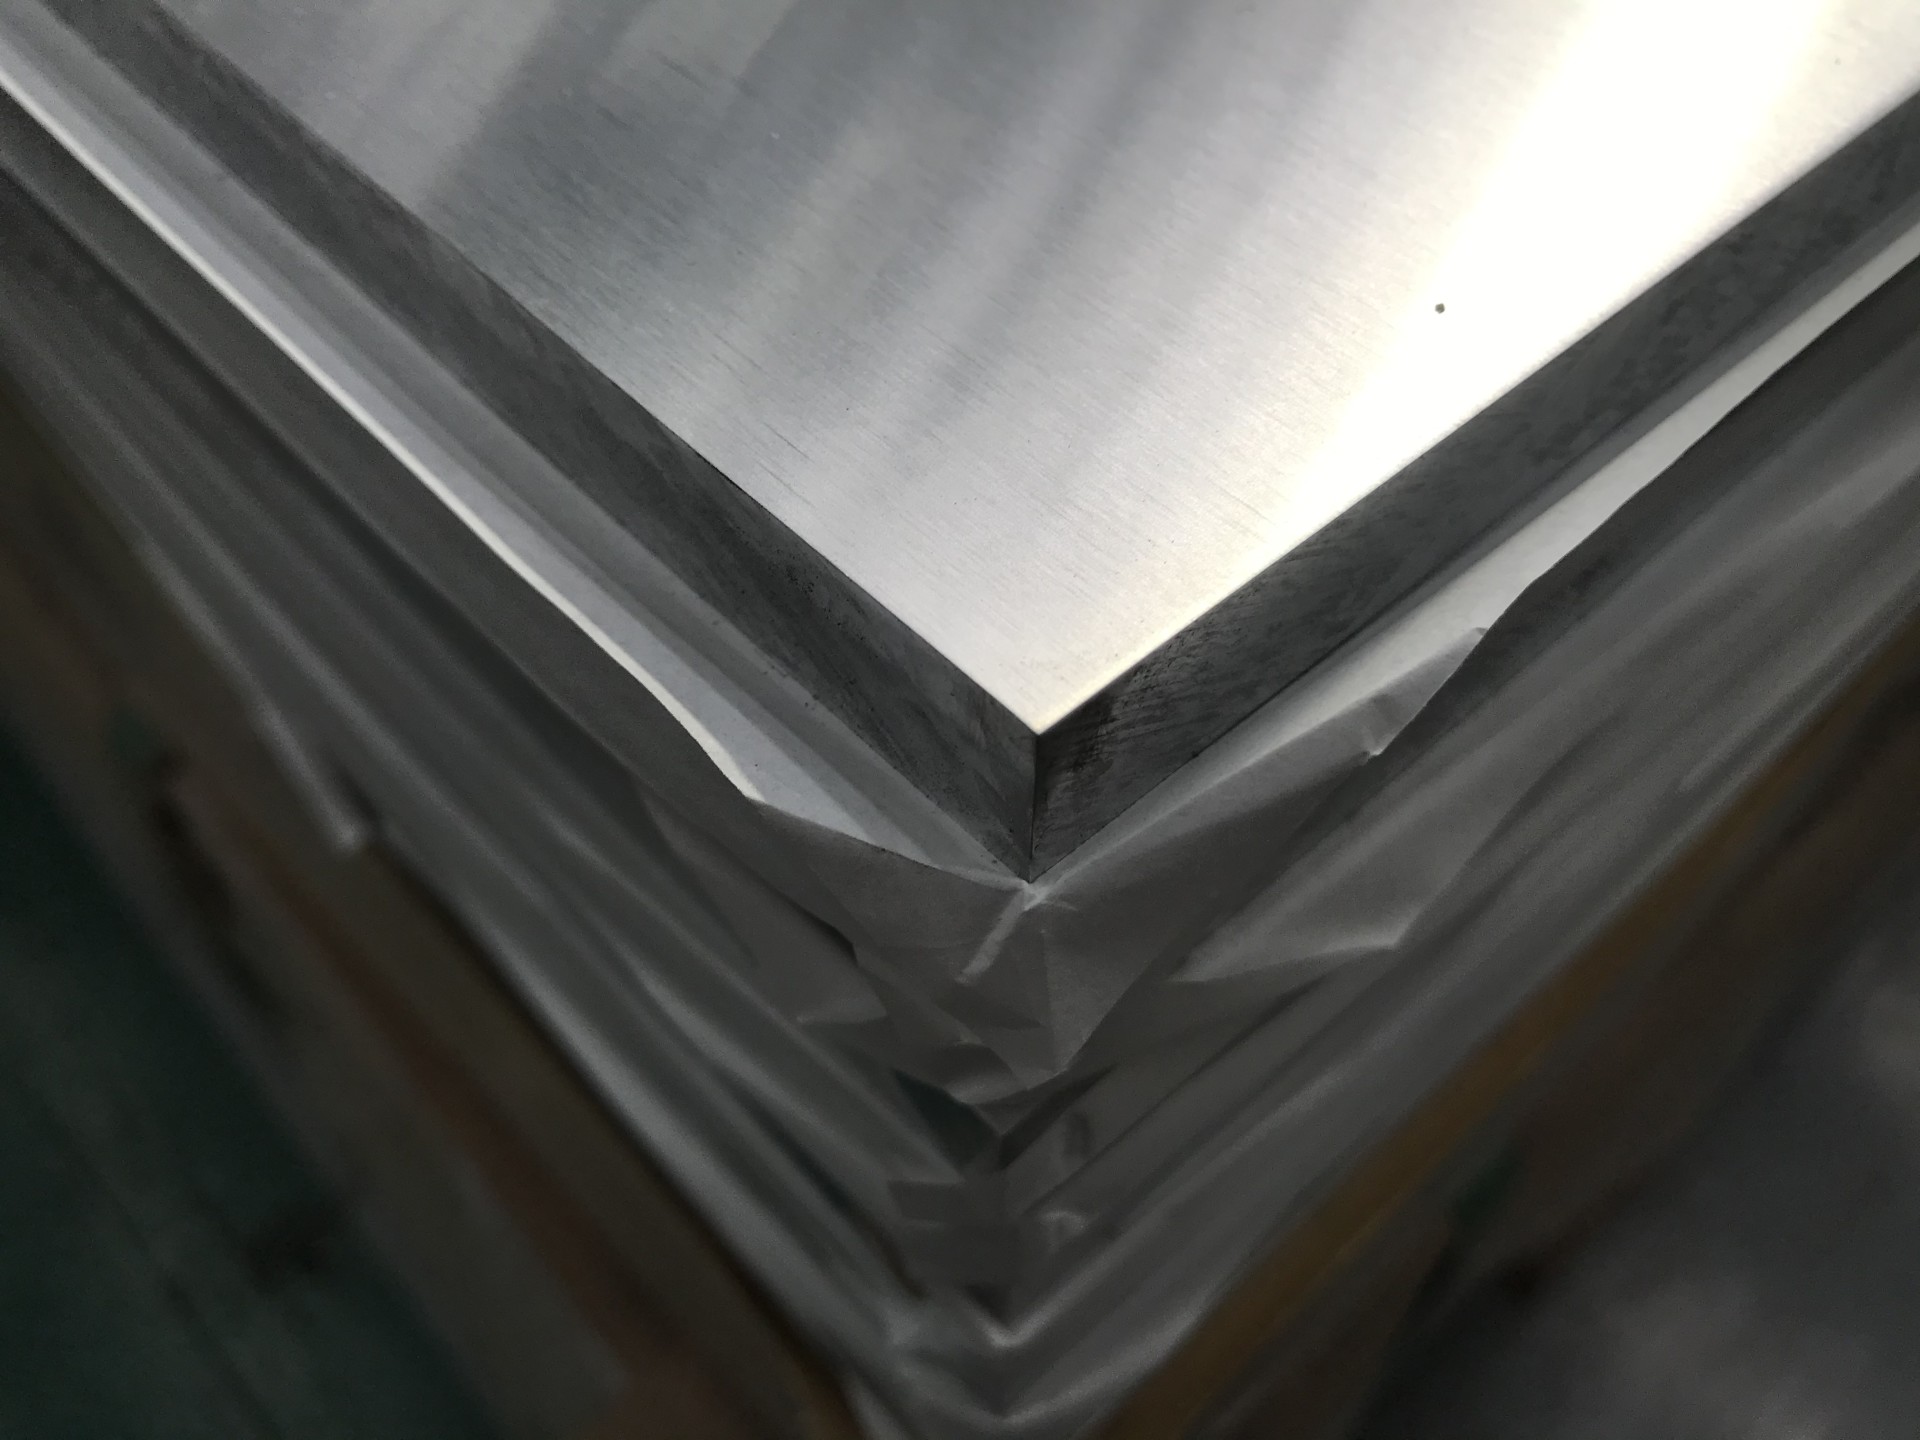 天津瑞升昌铝业全国供应6082t6铝板 厂家直销批发价格 6082铝板报价 6082铝板供应商示例图13